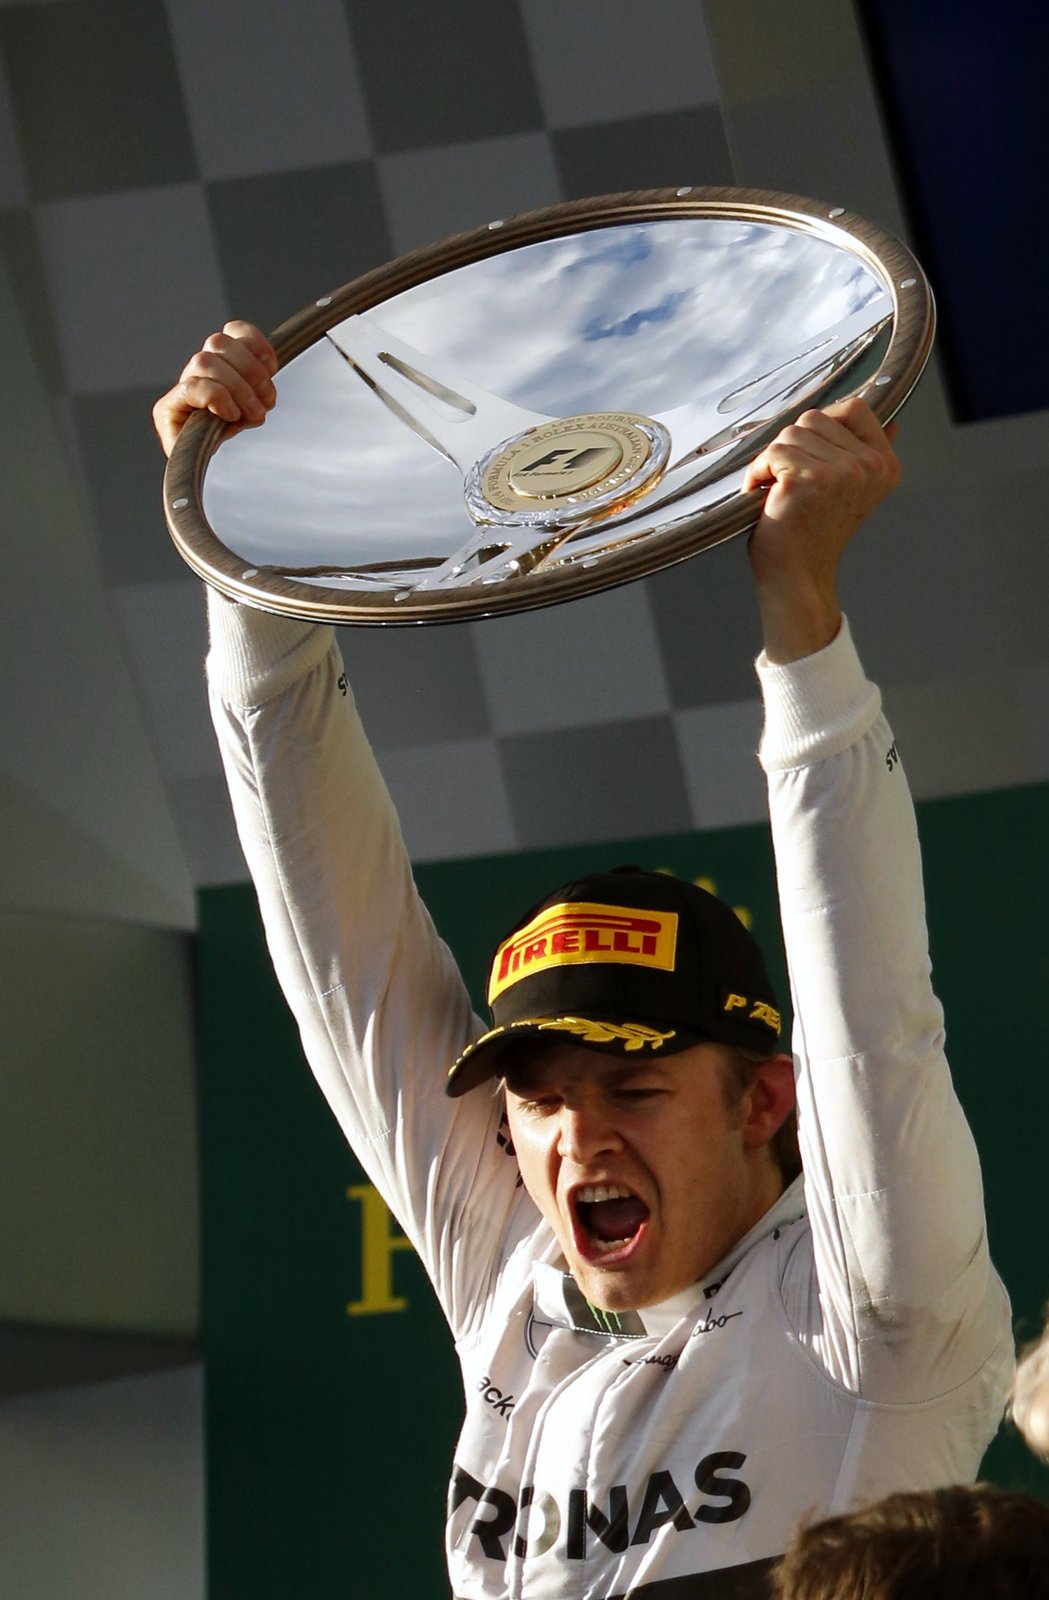 Nico Rosberg si pro čtvrté vítězství v kariéře dojel způsobem start - cíl. Vedení se ujal hned v prvních metrech závodu, kdy se ze třetího místa prosmýkl kolem týmového kolegy Hamiltona